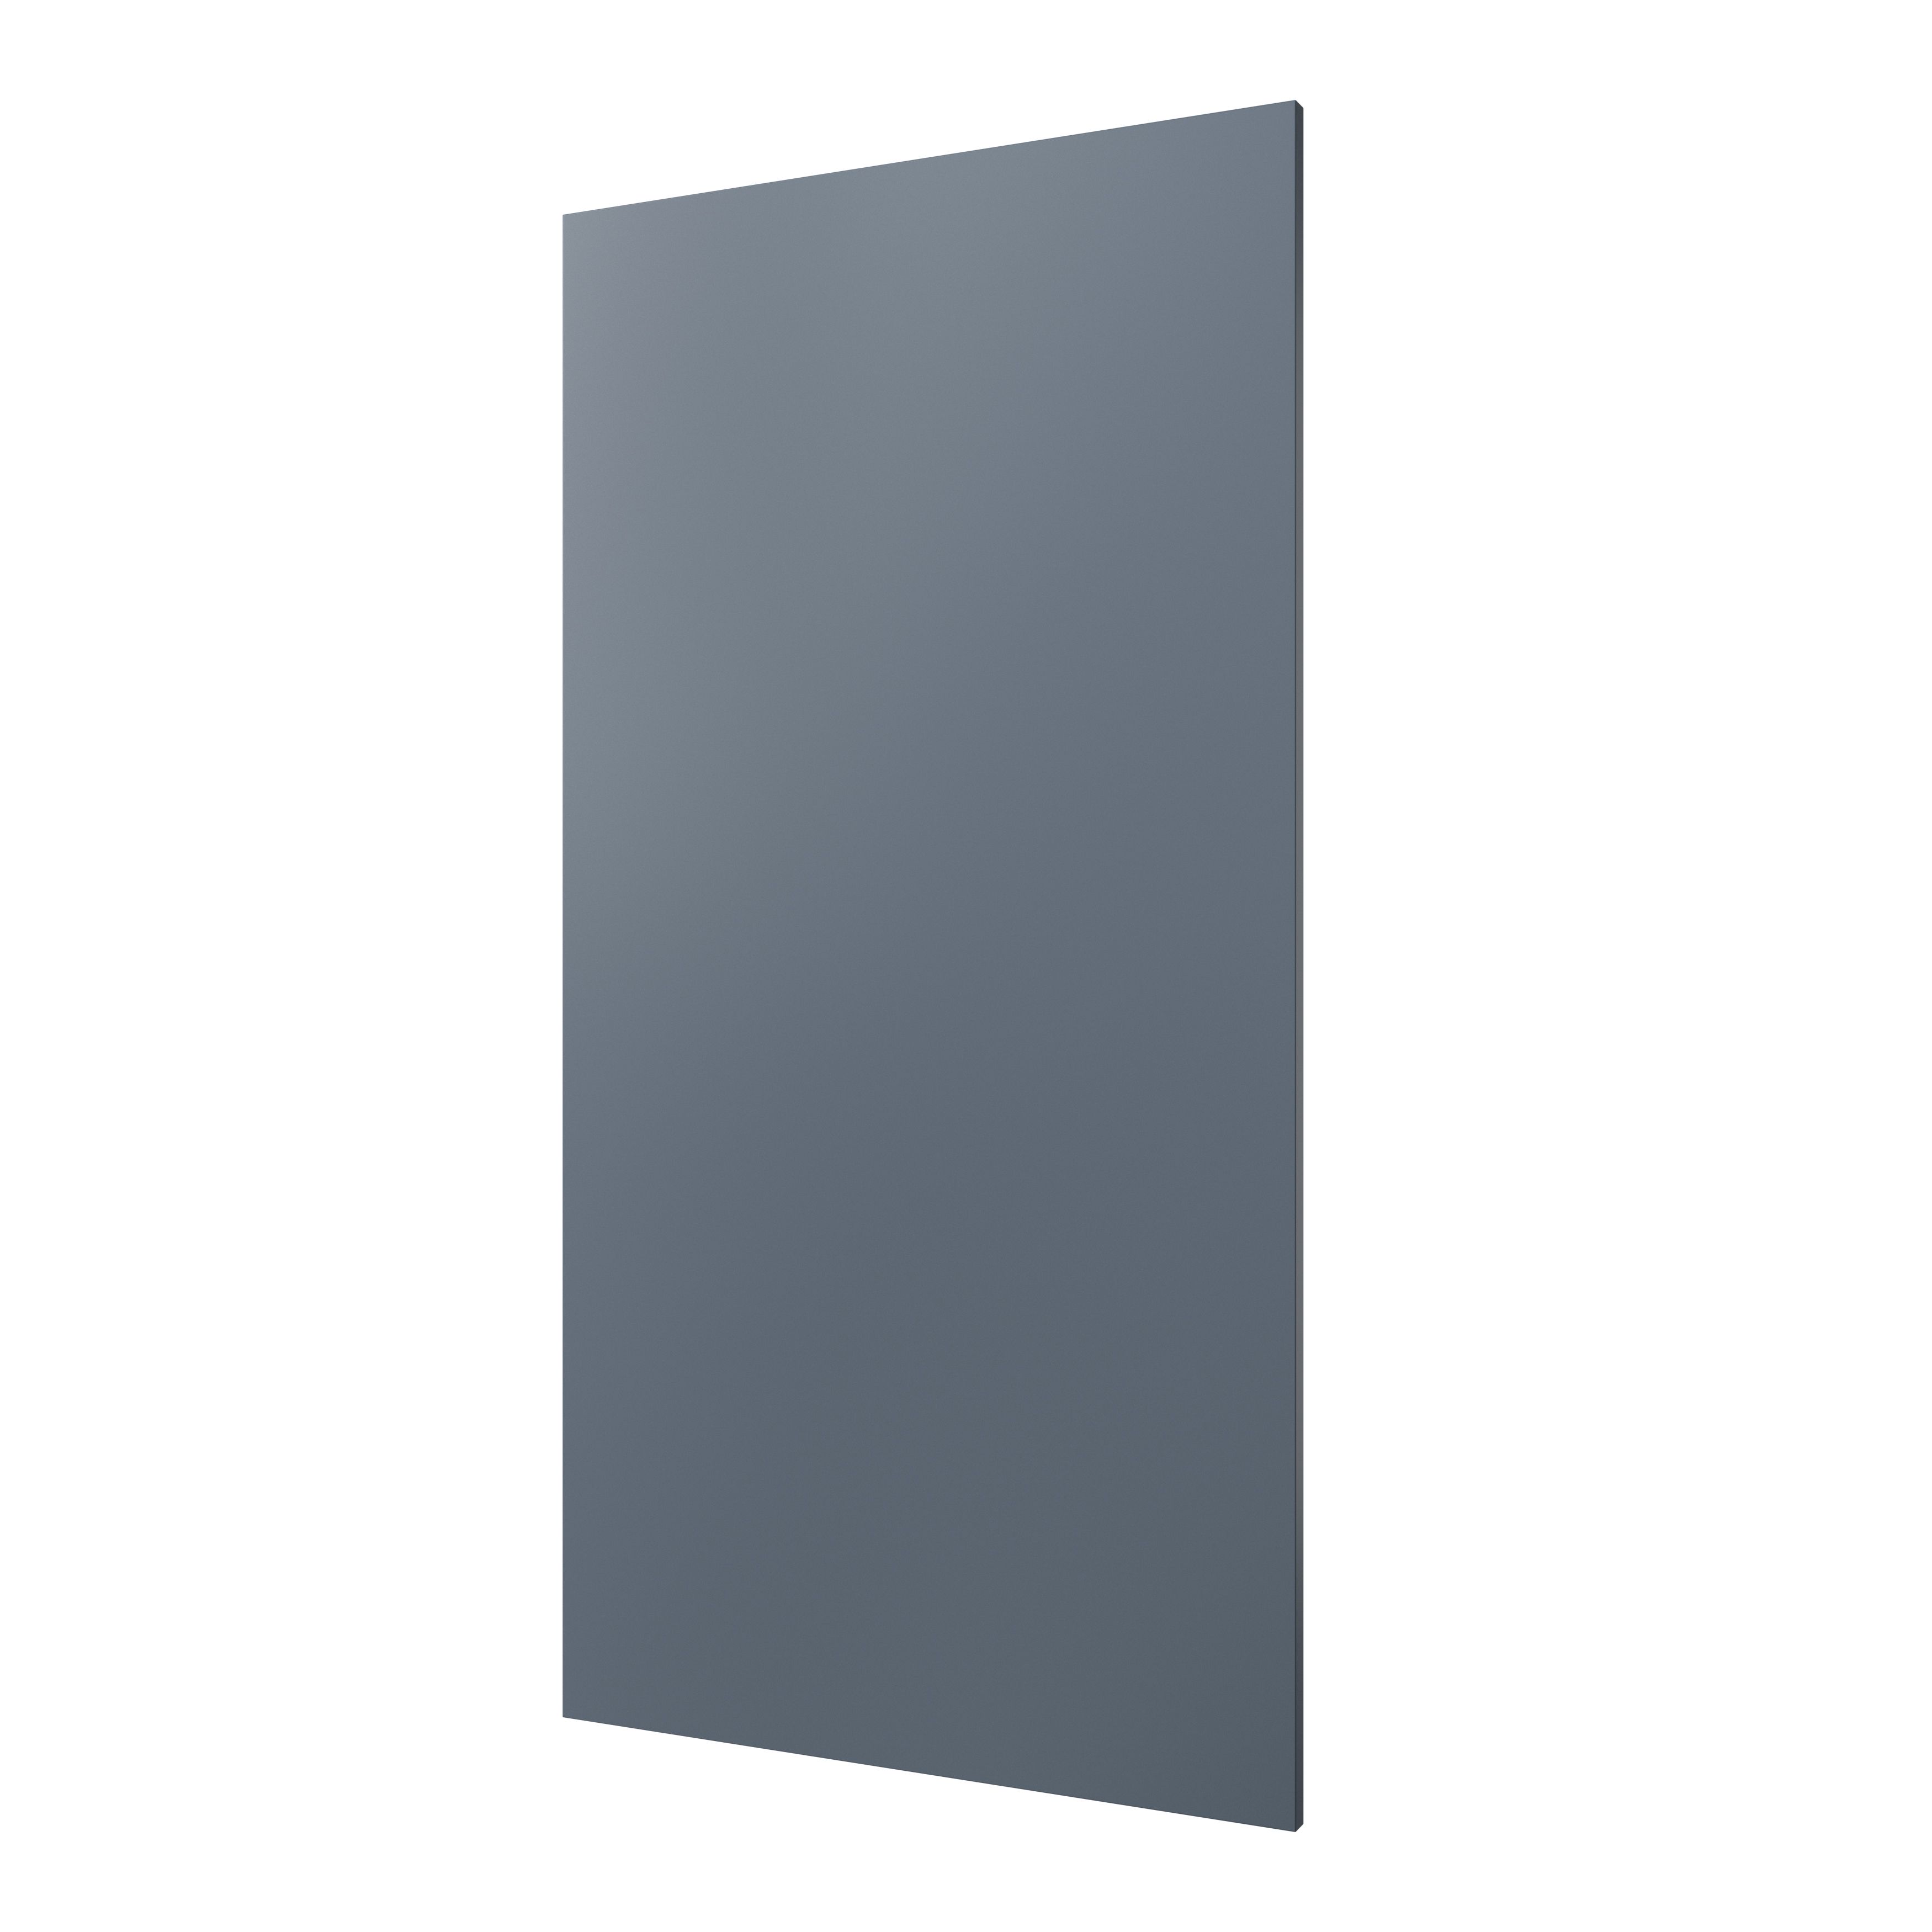 GoodHome Alisma Matt blue slab 50:50 Tall larder Cabinet door (W)600mm (H)1181mm (T)18mm